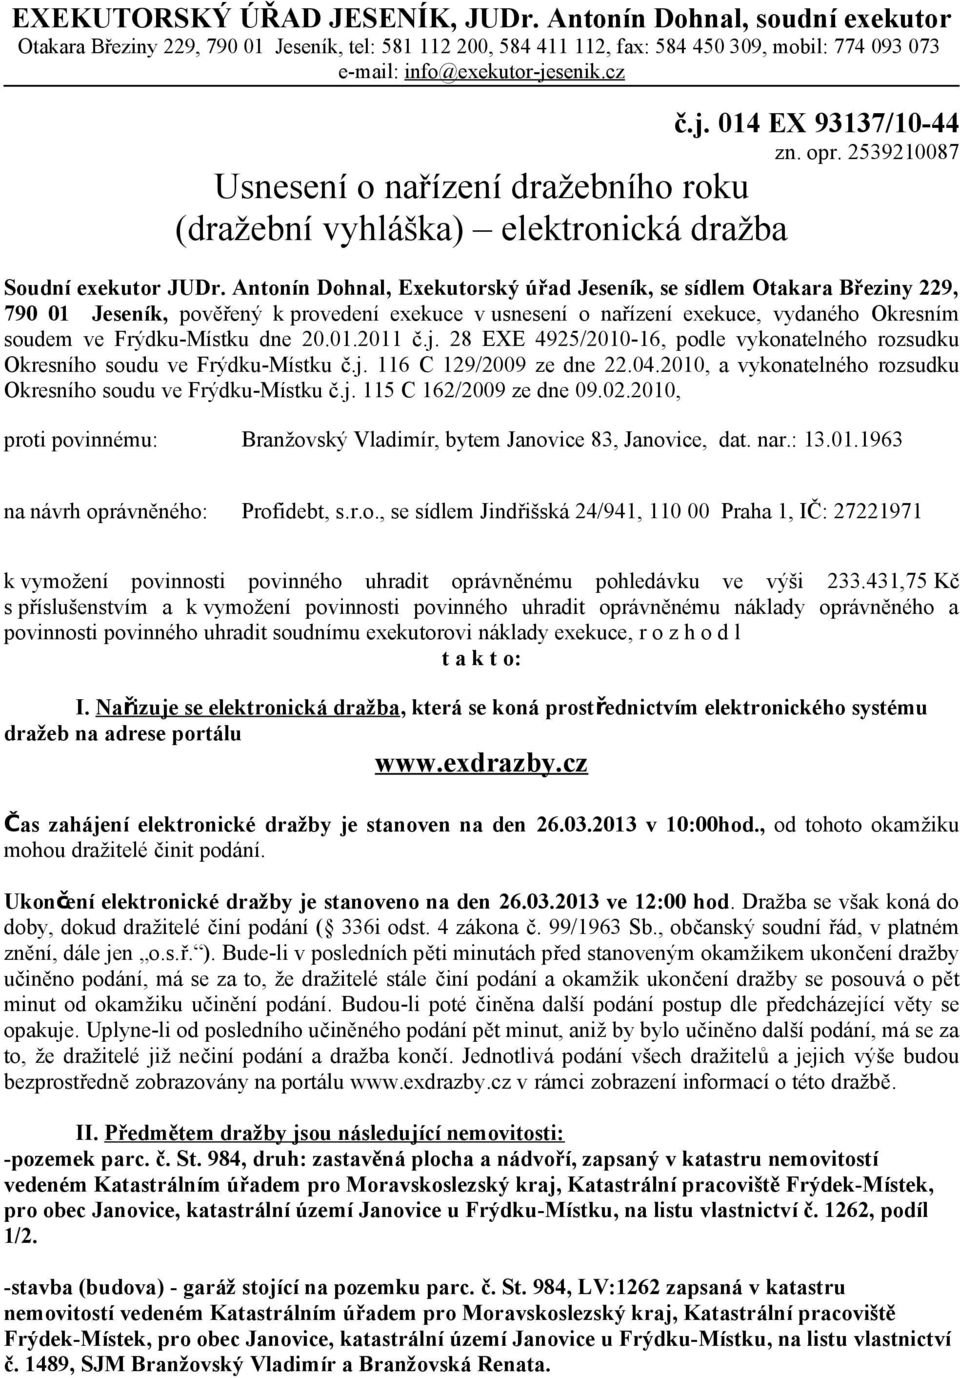 Antonín Dohnal, Exekutorský úřad Jeseník, se sídlem Otakara Březiny 229, 790 01 Jeseník, pověřený k provedení exekuce v usnesení o nařízení exekuce, vydaného Okresním soudem ve Frýdku-Místku dne 20.